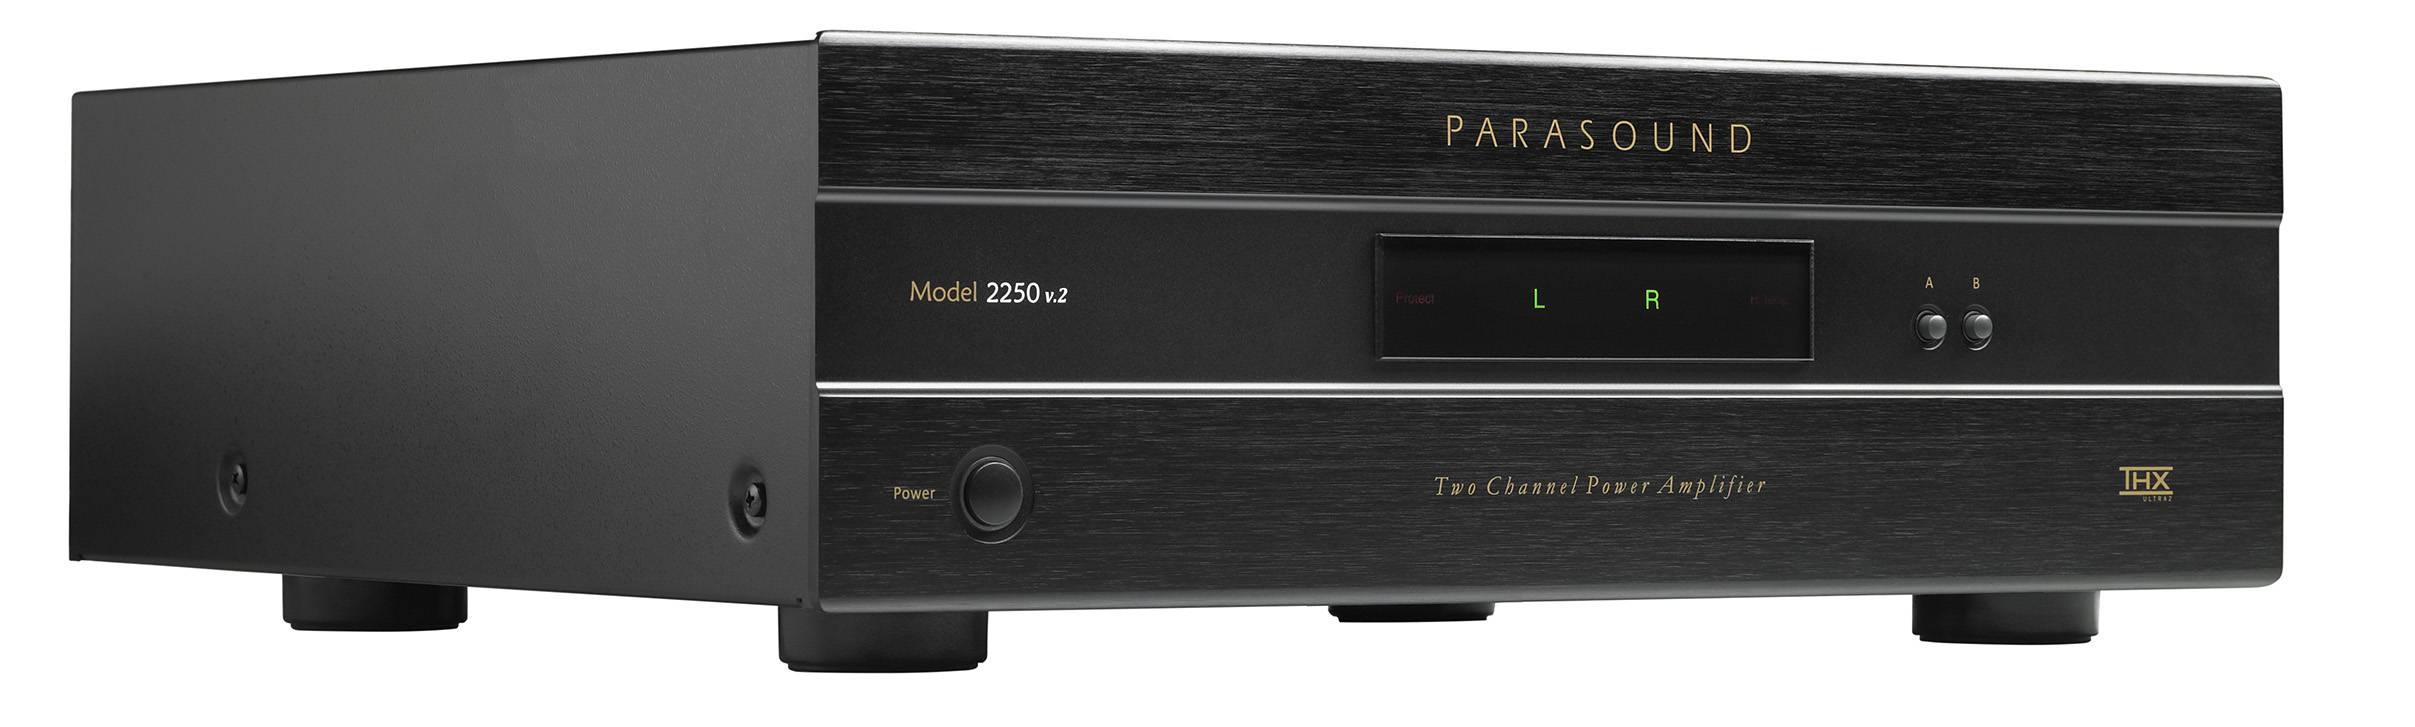 Parasound Model 2250